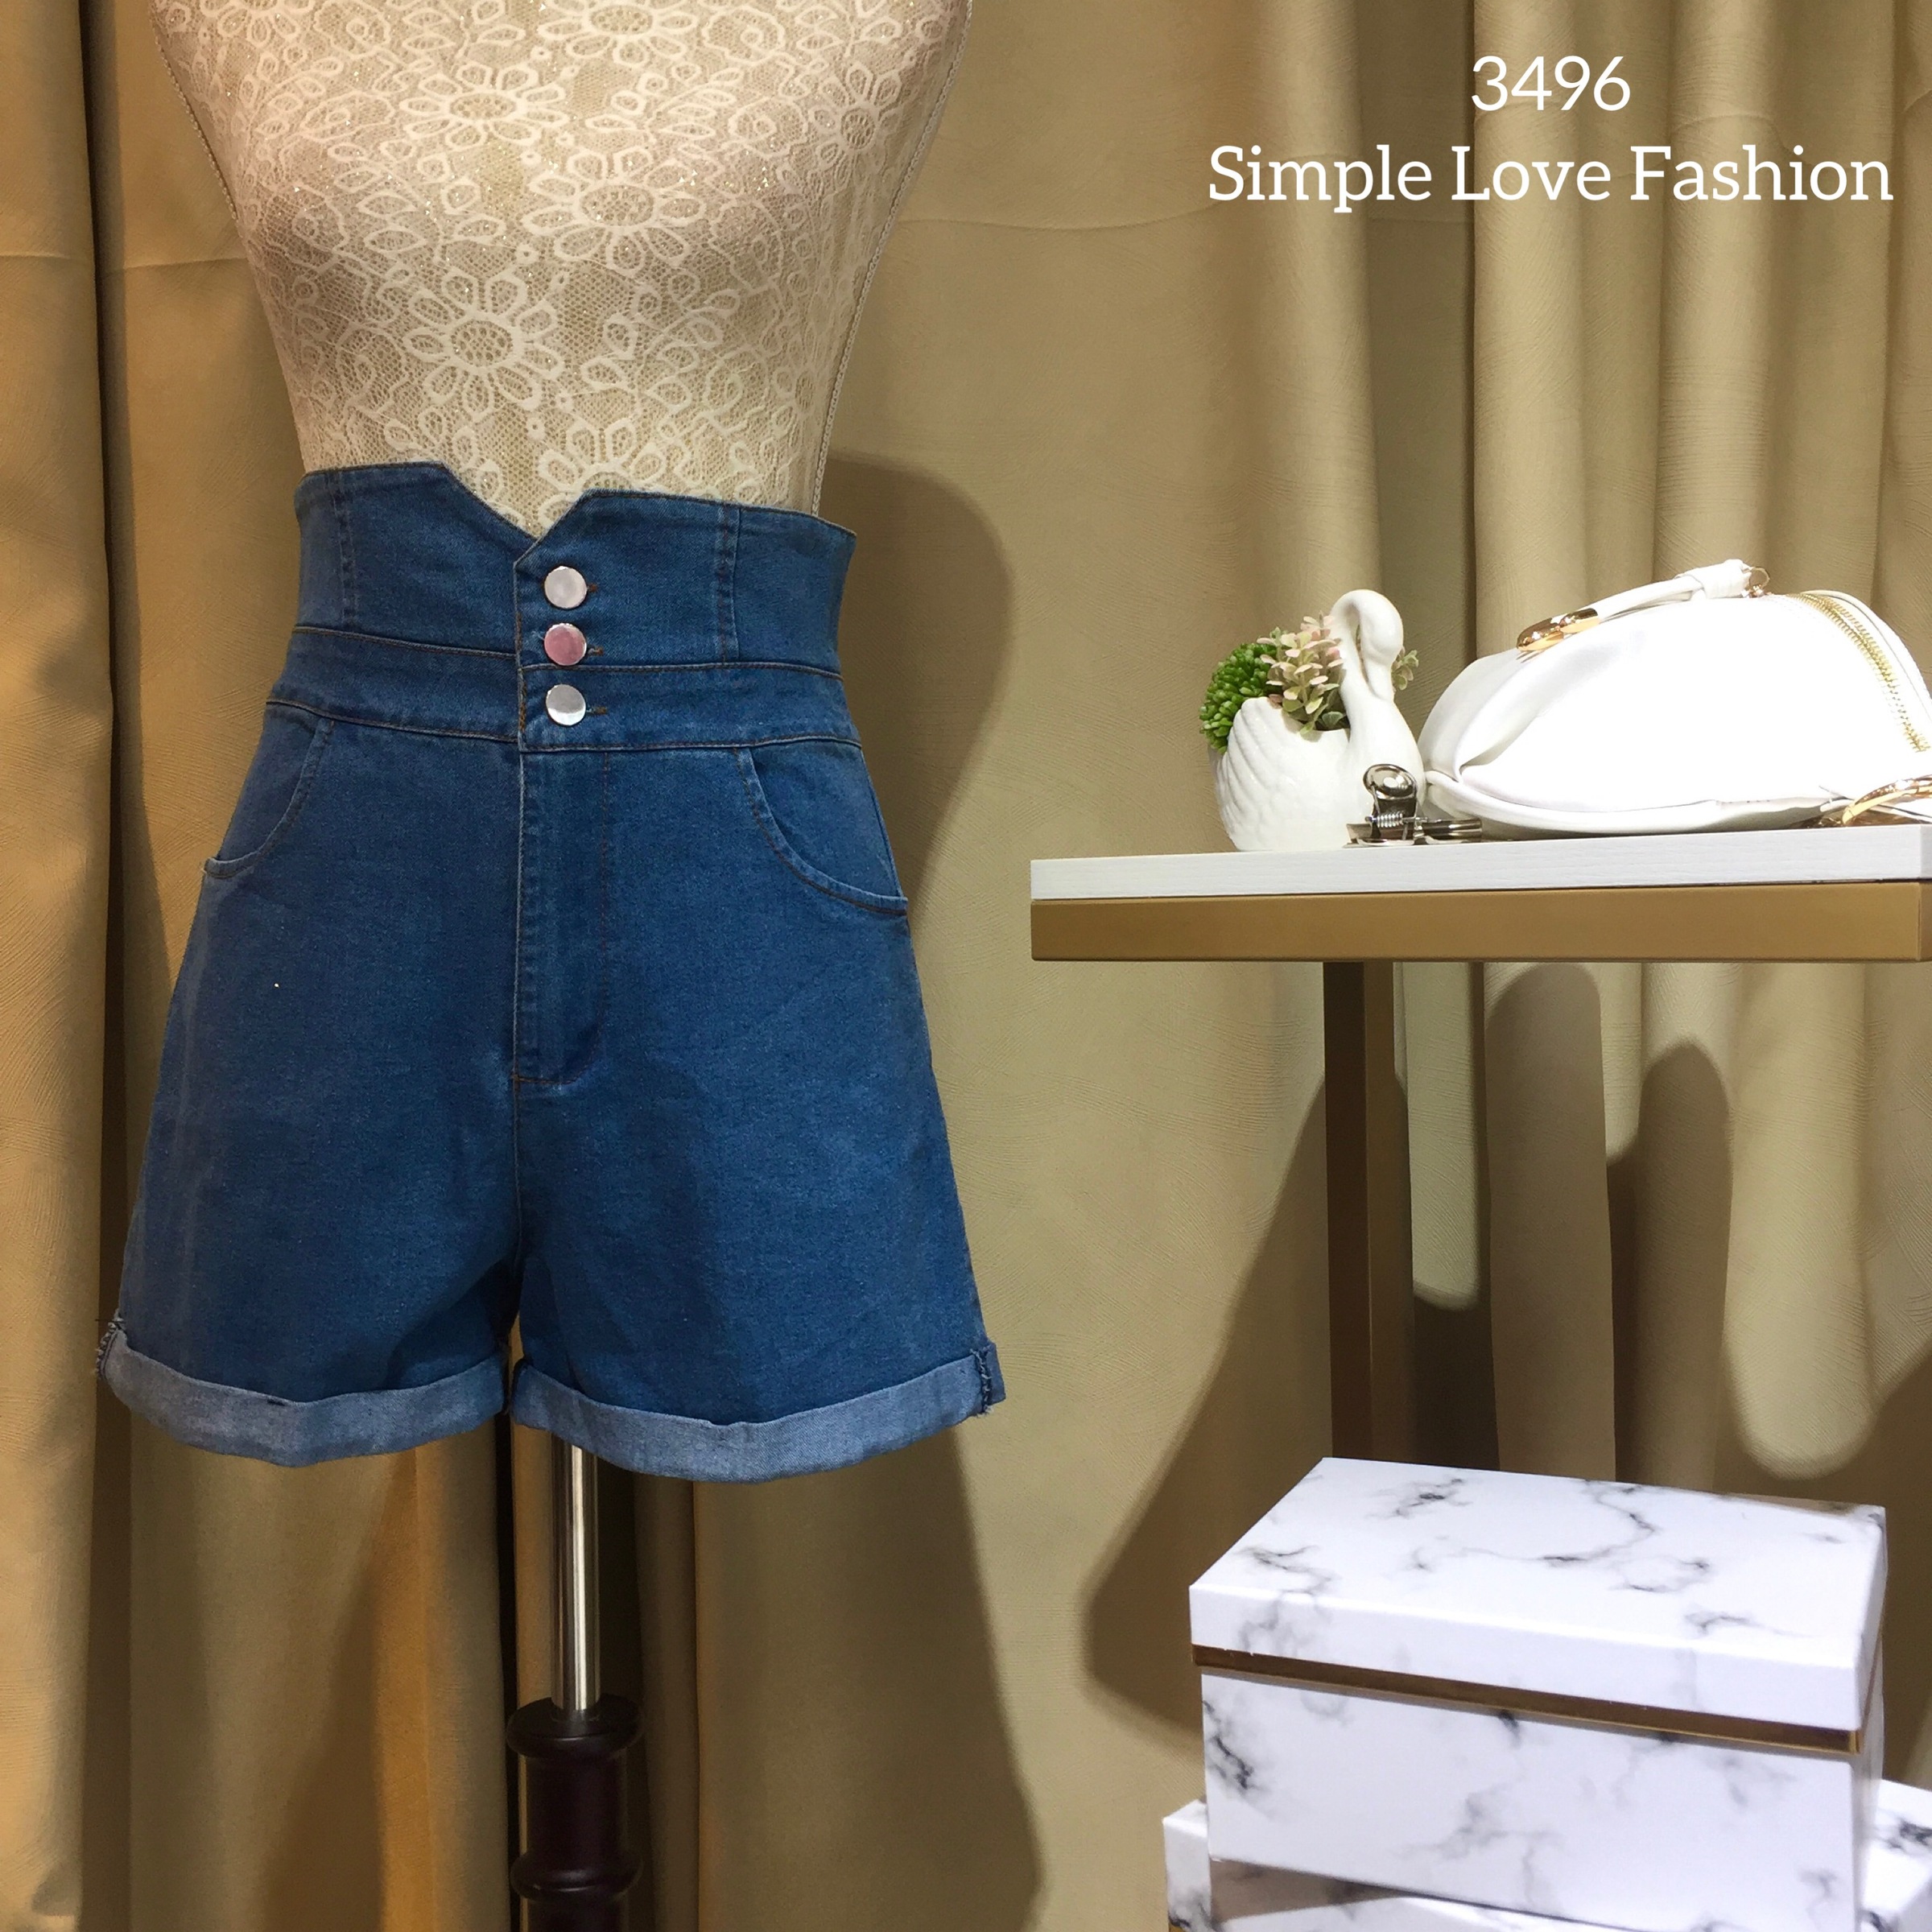 Button Design Short Pants 3496 – Simple Love Fashion